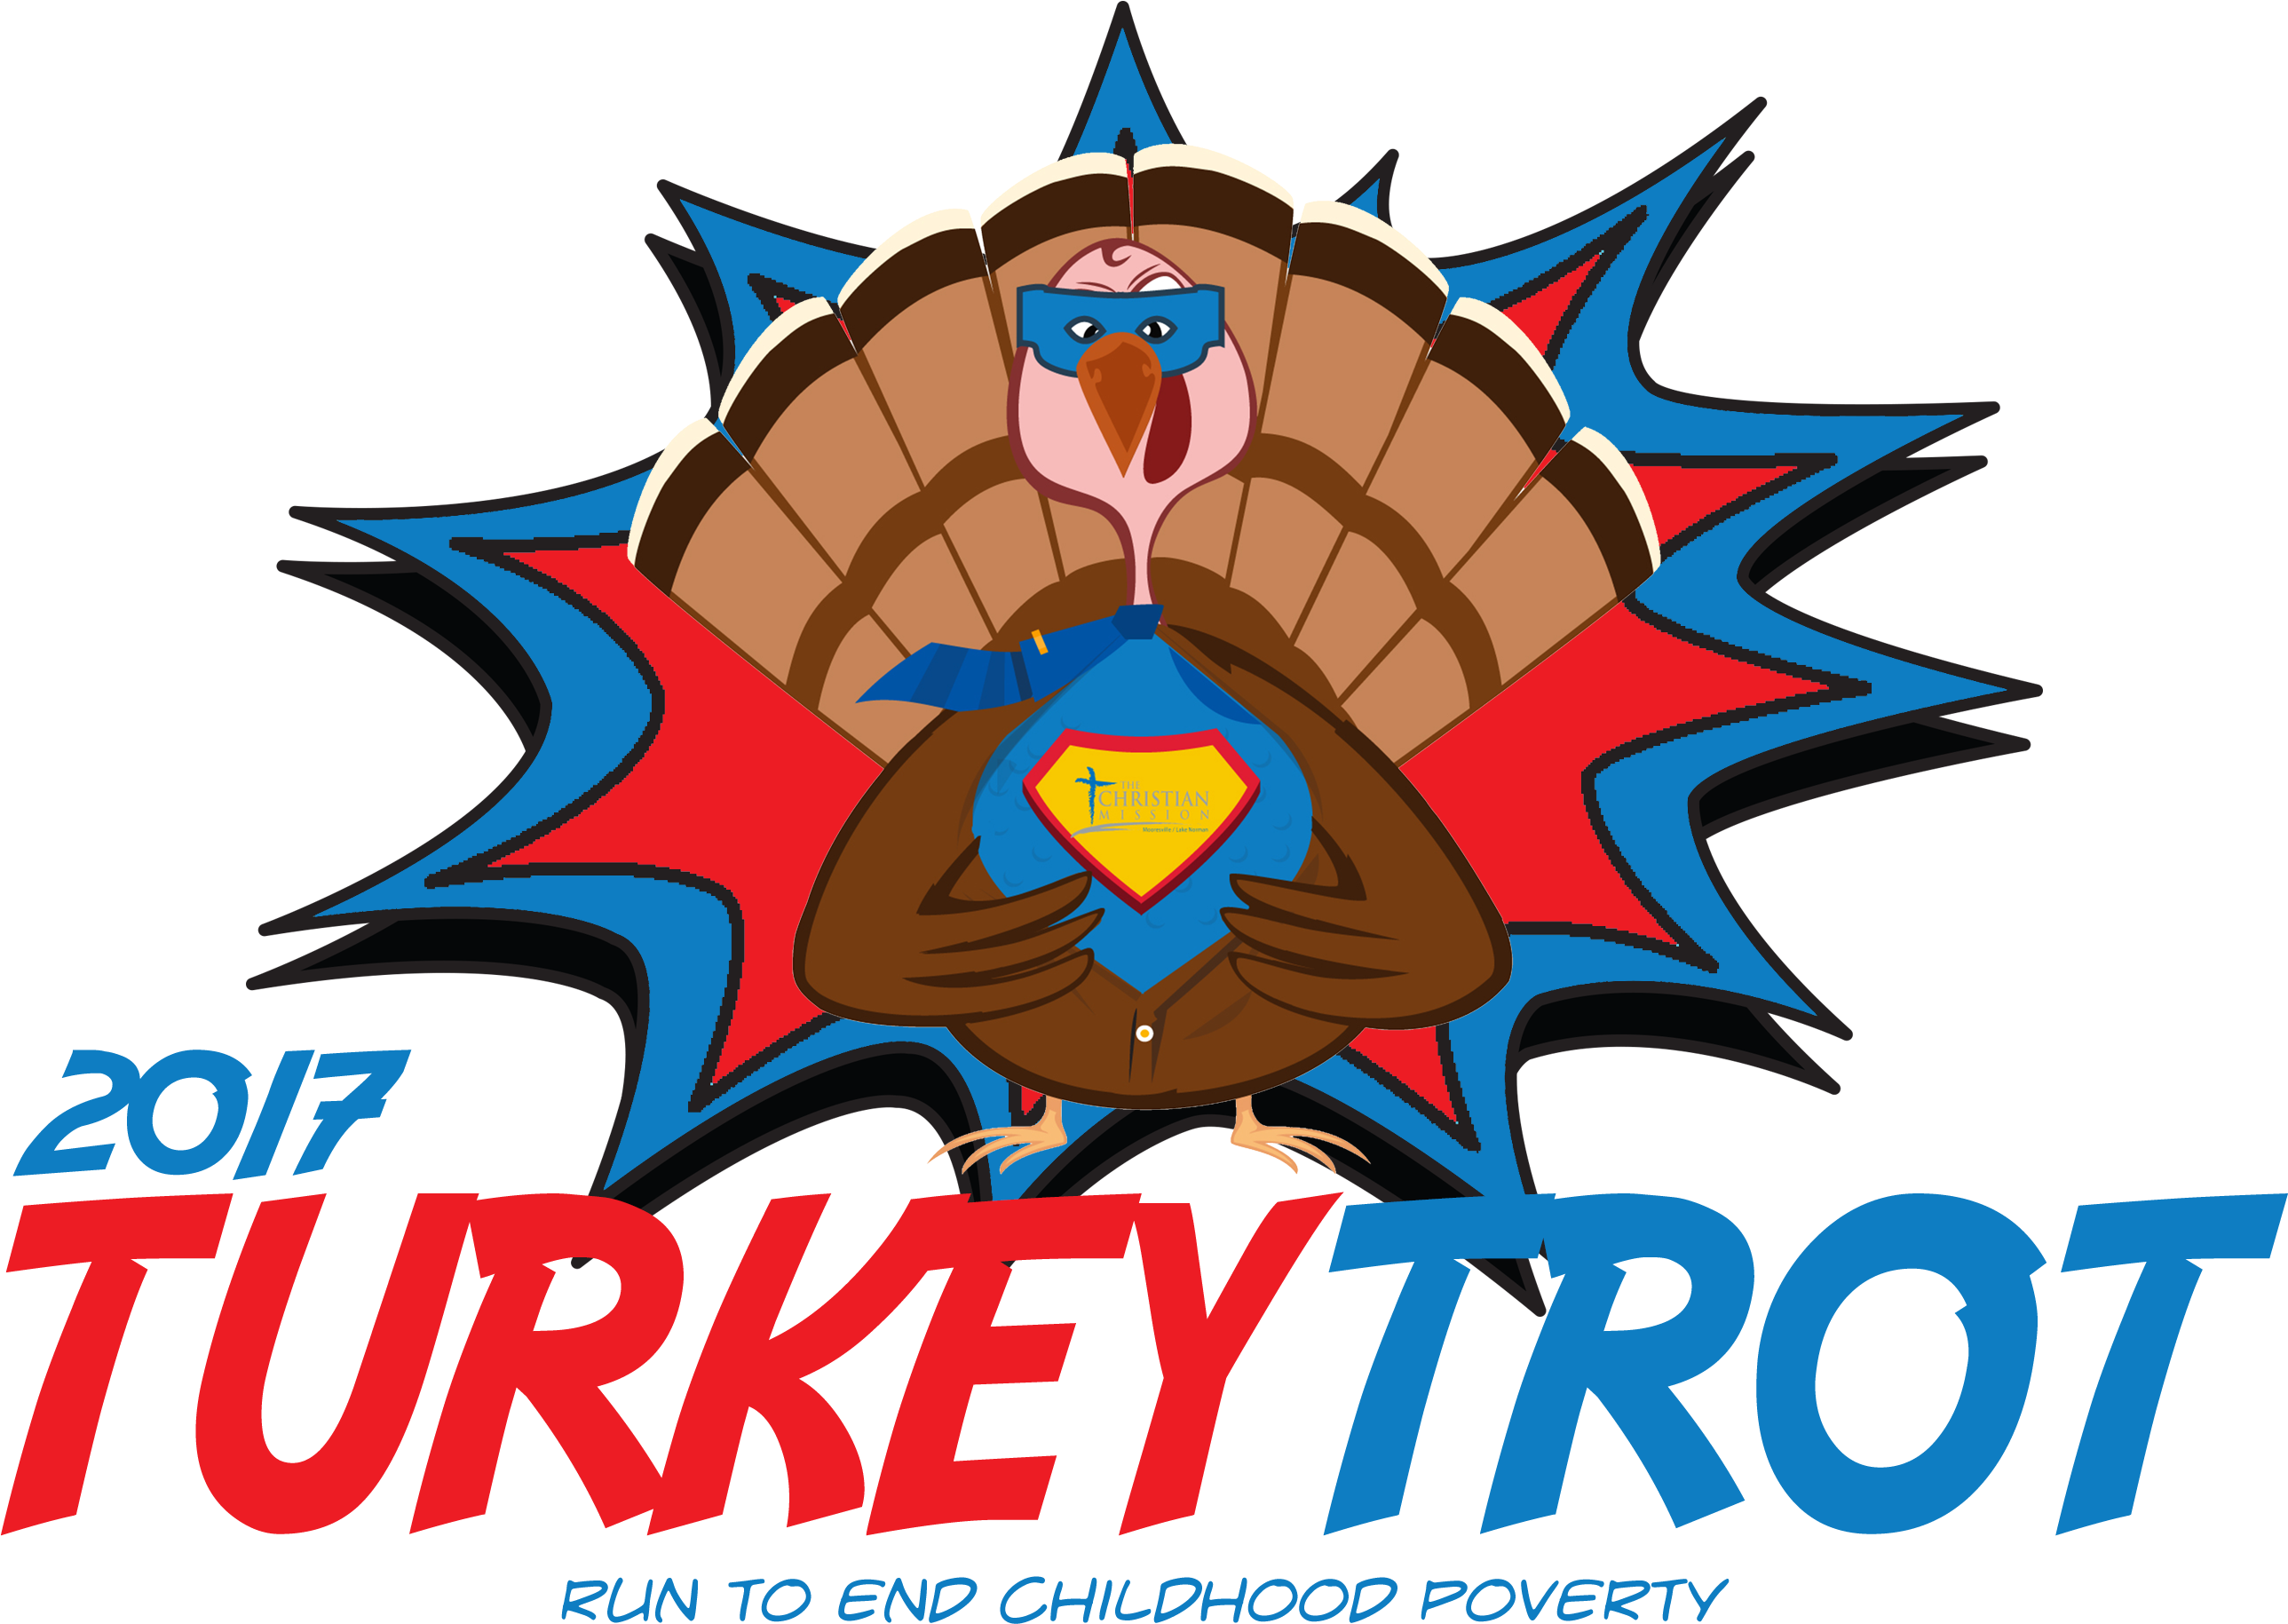 2017 Turkey Trot - Turkey Trot Png (2720x2000)